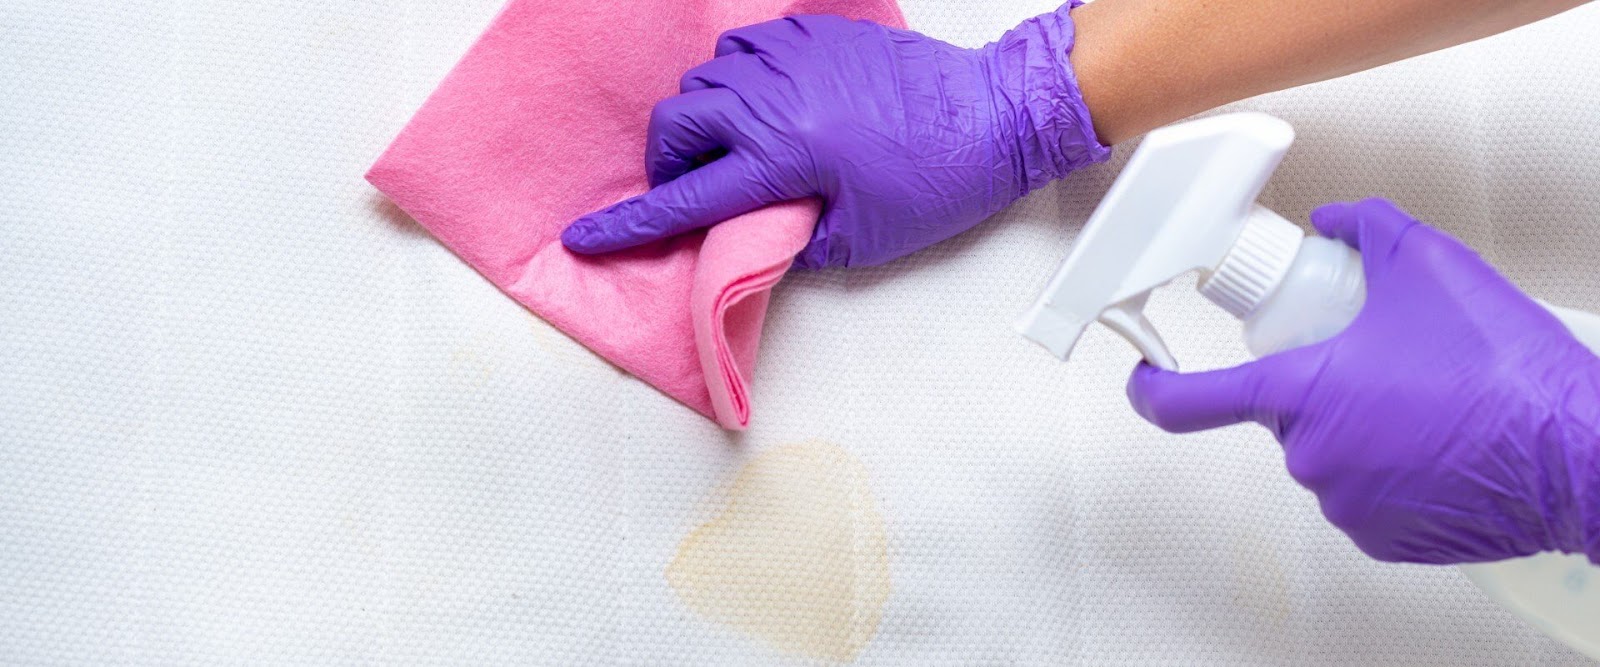  Sử dụng một chiếc khăn bông, thấm nước lạnh rồi chấm nhẹ lên trên các vết máu để làm sạch